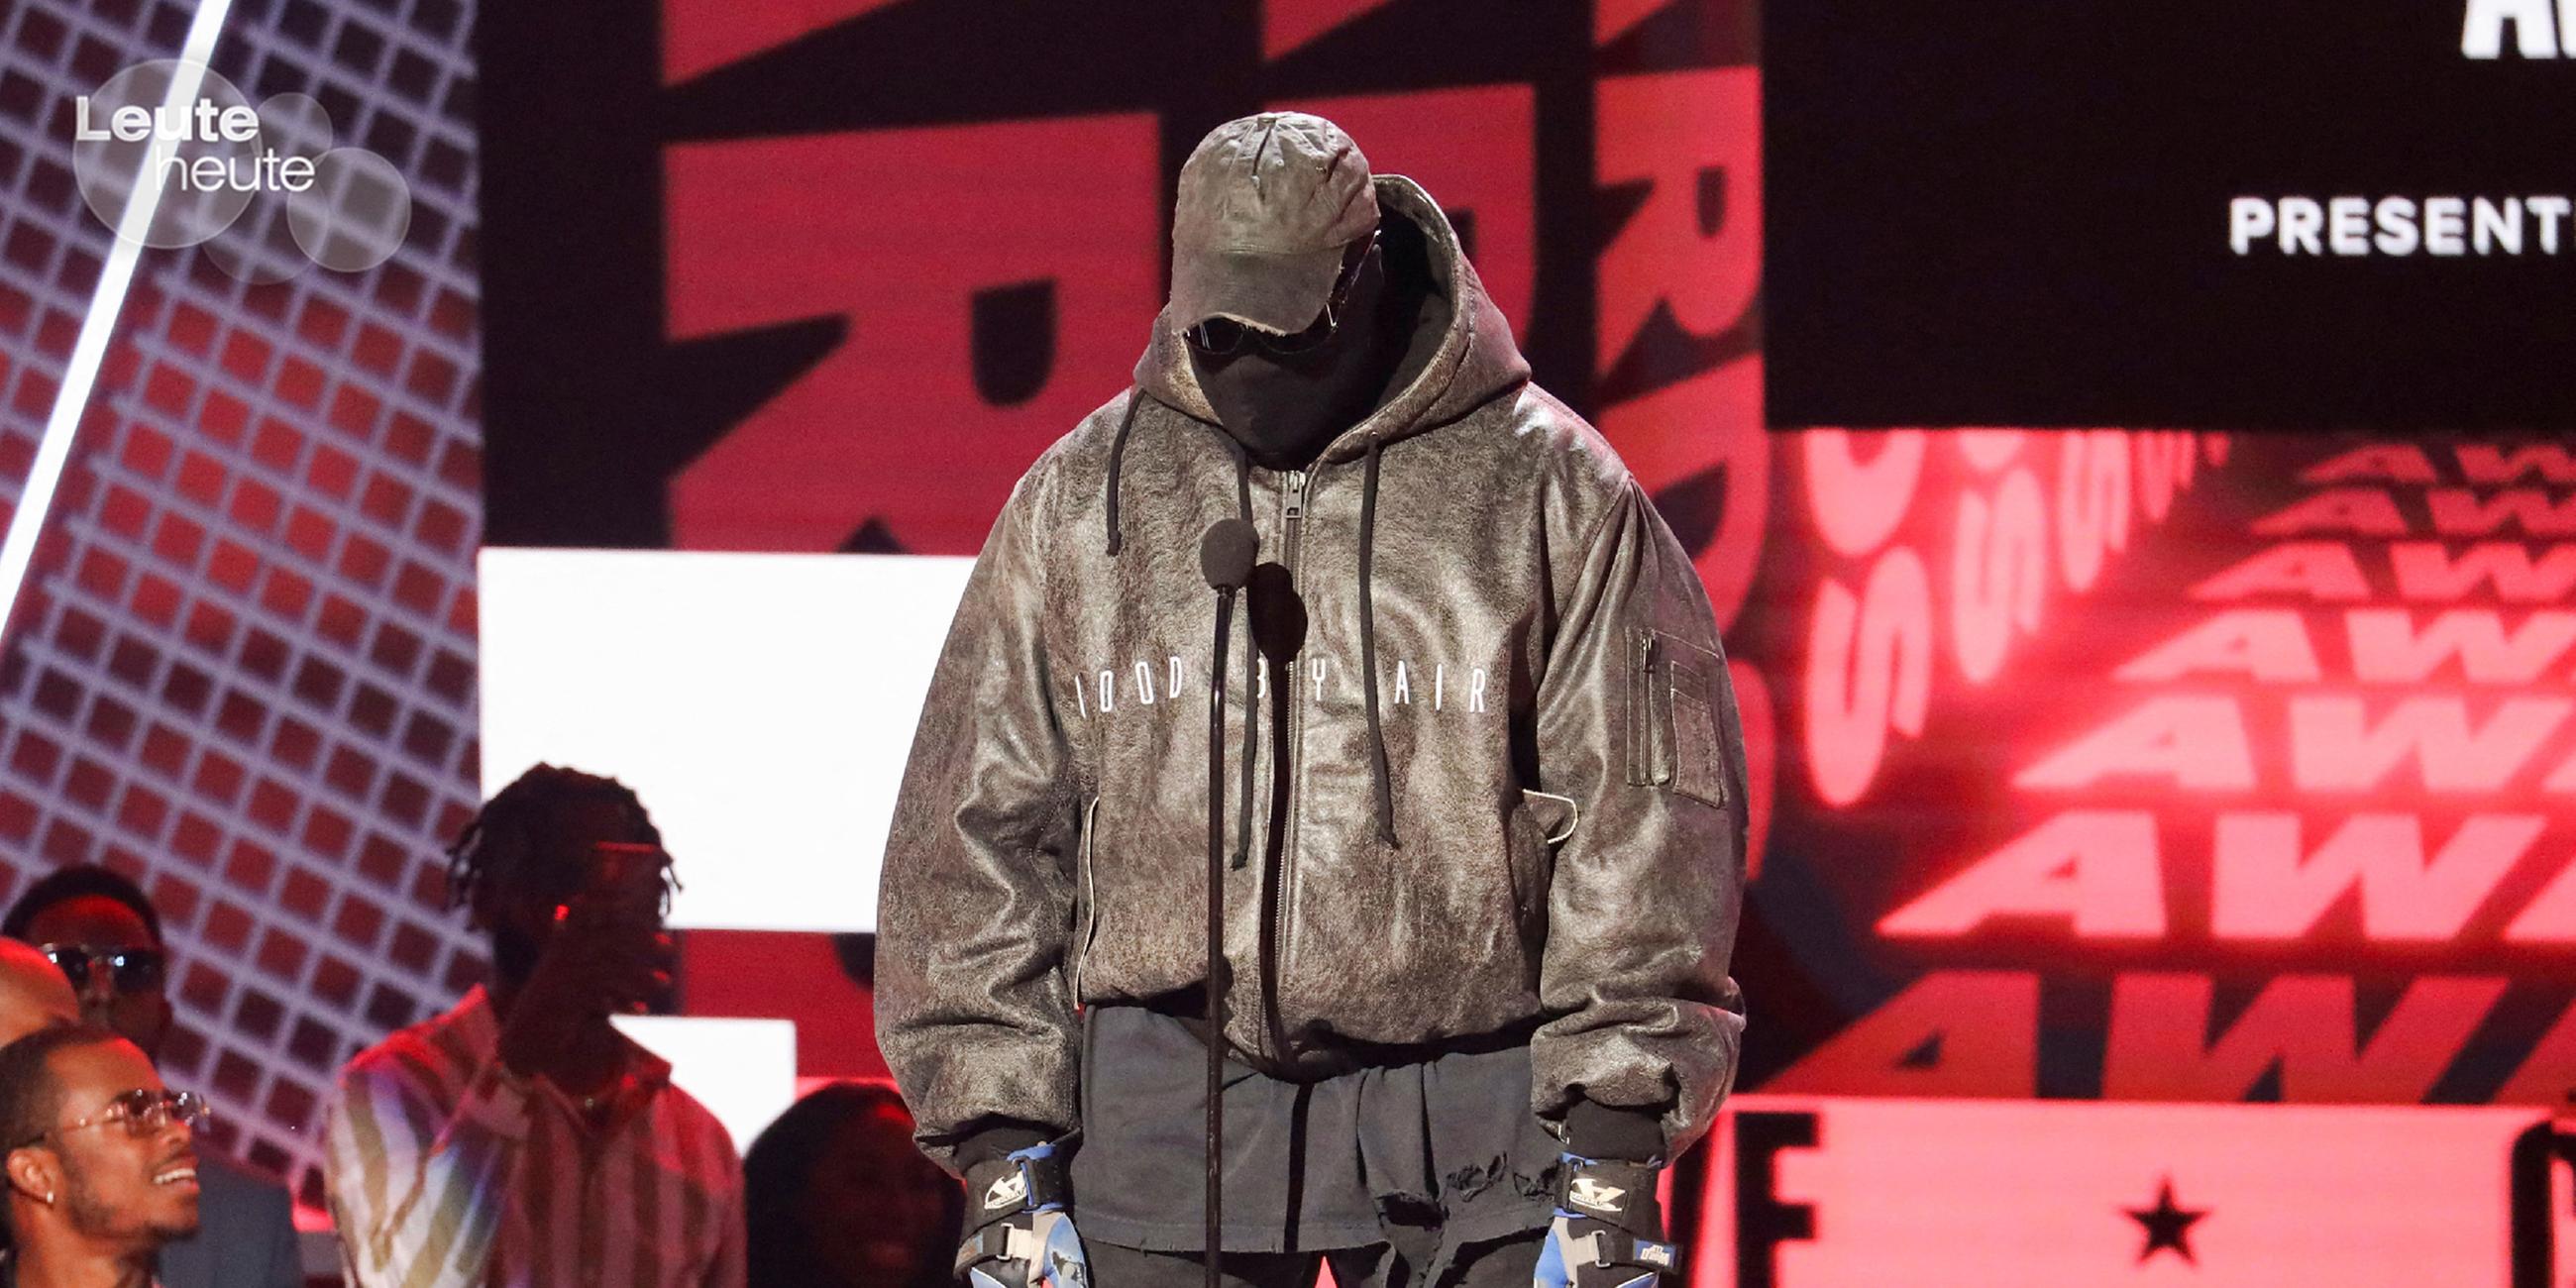 Bei den BET Awards in Los Angeles zeigt sich Kanye West seit längerer Zeit wieder öffentlich. Er ehrt seinen Freund Sean "Diddy" Combs und ist dabei komplett verhüllt.